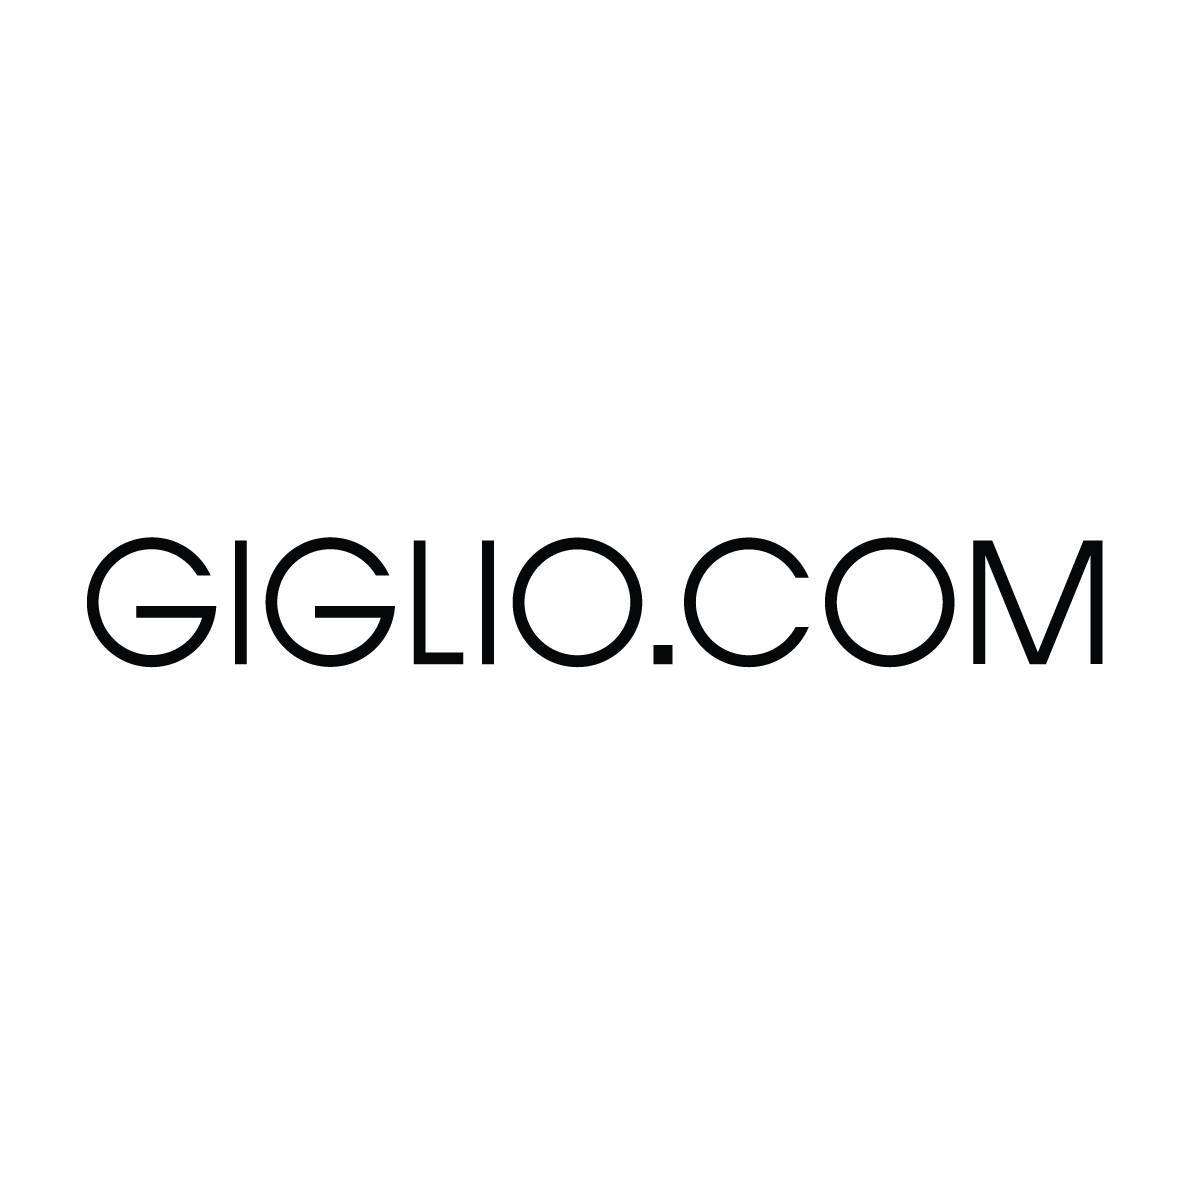 Giglio.com - Crunchbase Company Profile & Funding